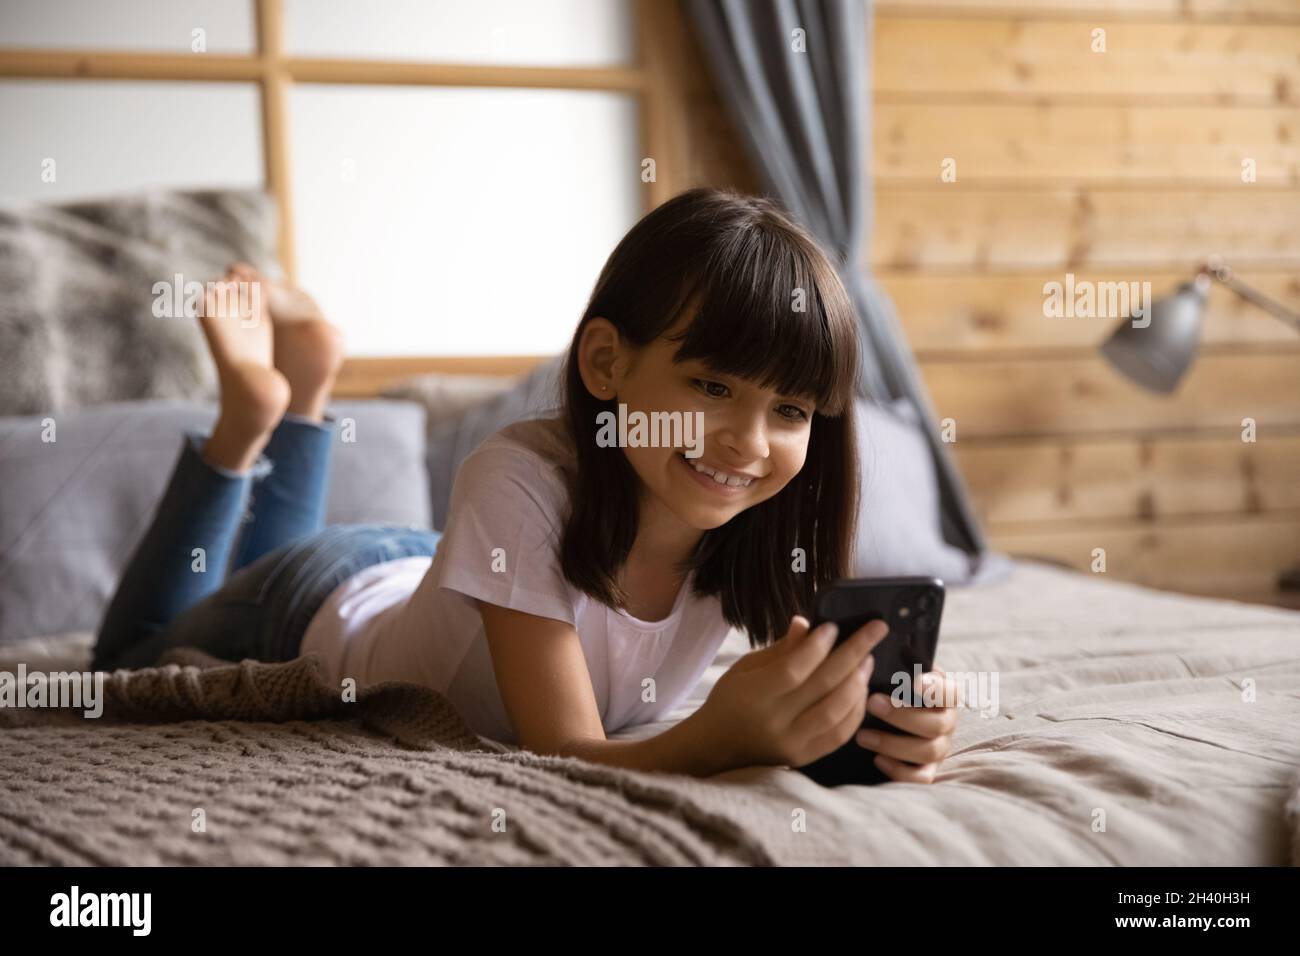 Happy smiling gen Z girl using smartphone in bedroom Stock Photo